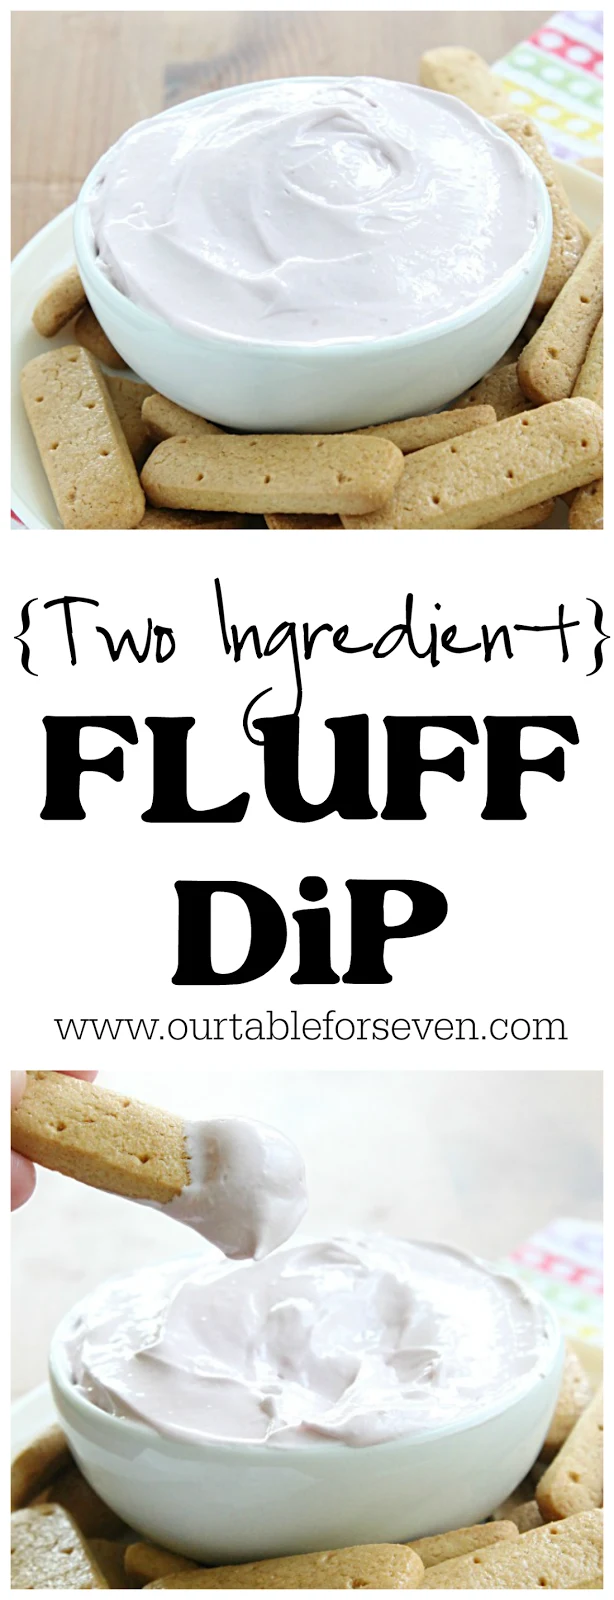 Two Ingredient Fluff Dip #sweet #dessert #dip #tableforsevenblog @tableforseven 